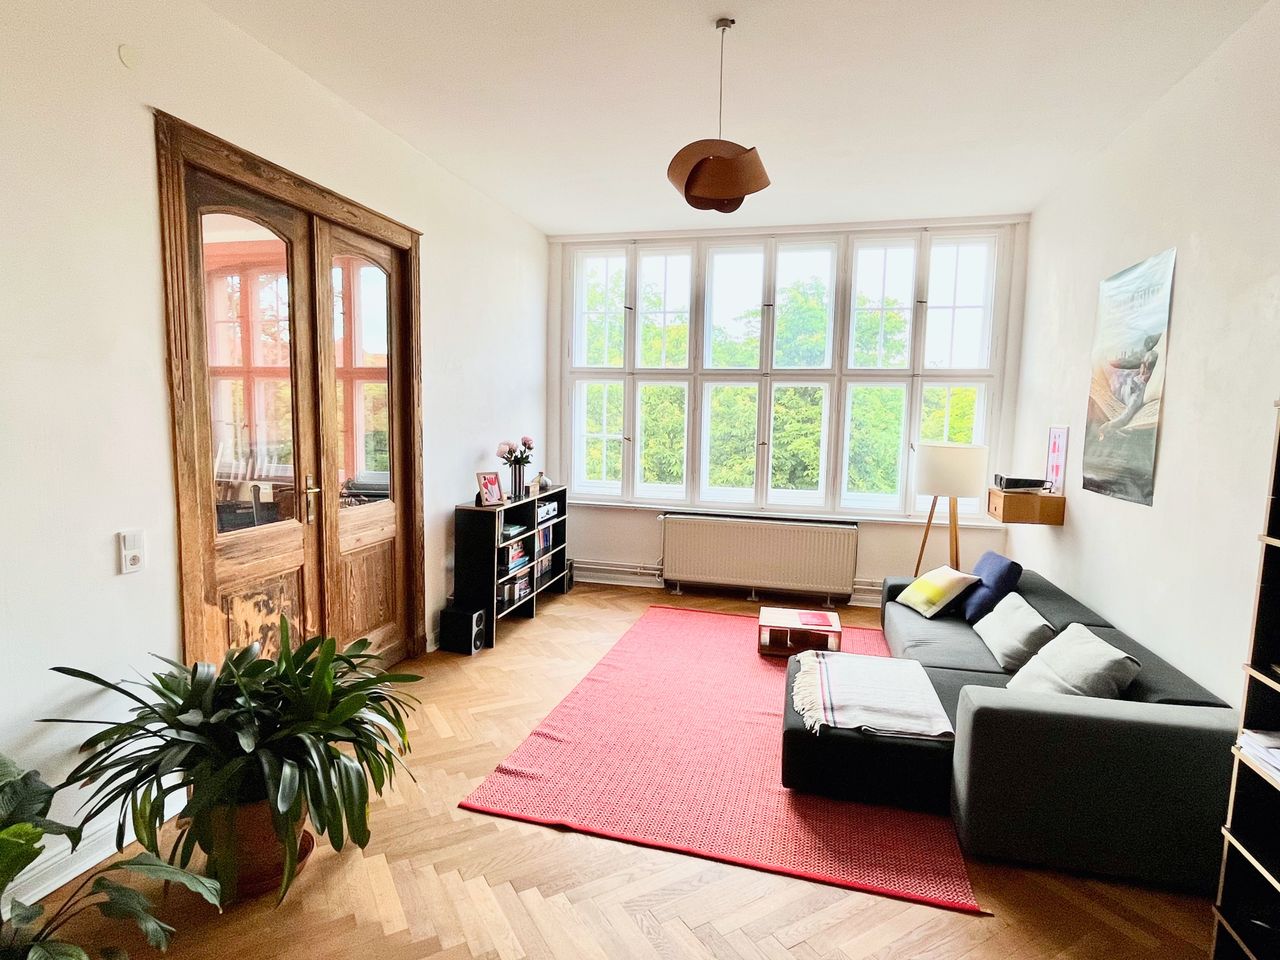 Beautiful, light-filled 4-room apartment in a villa in Berlin Lichterfelde